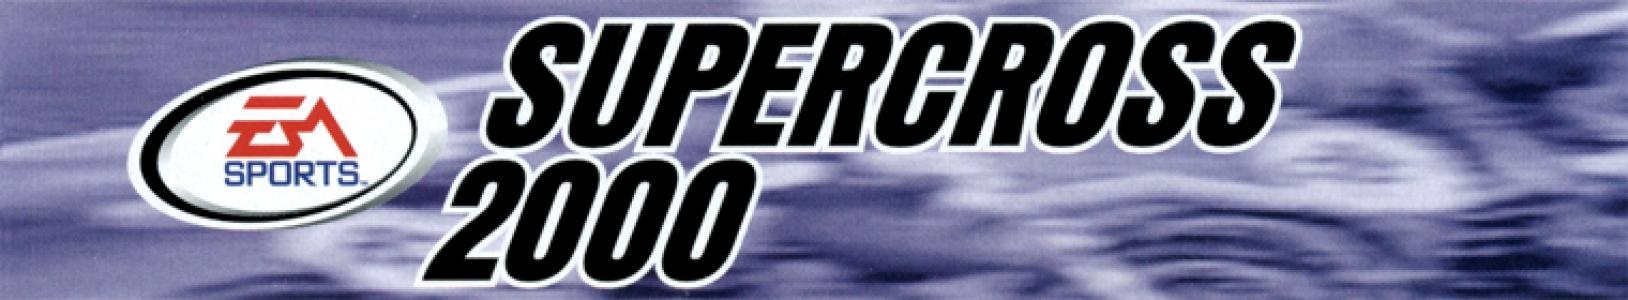 Supercross 2000 banner